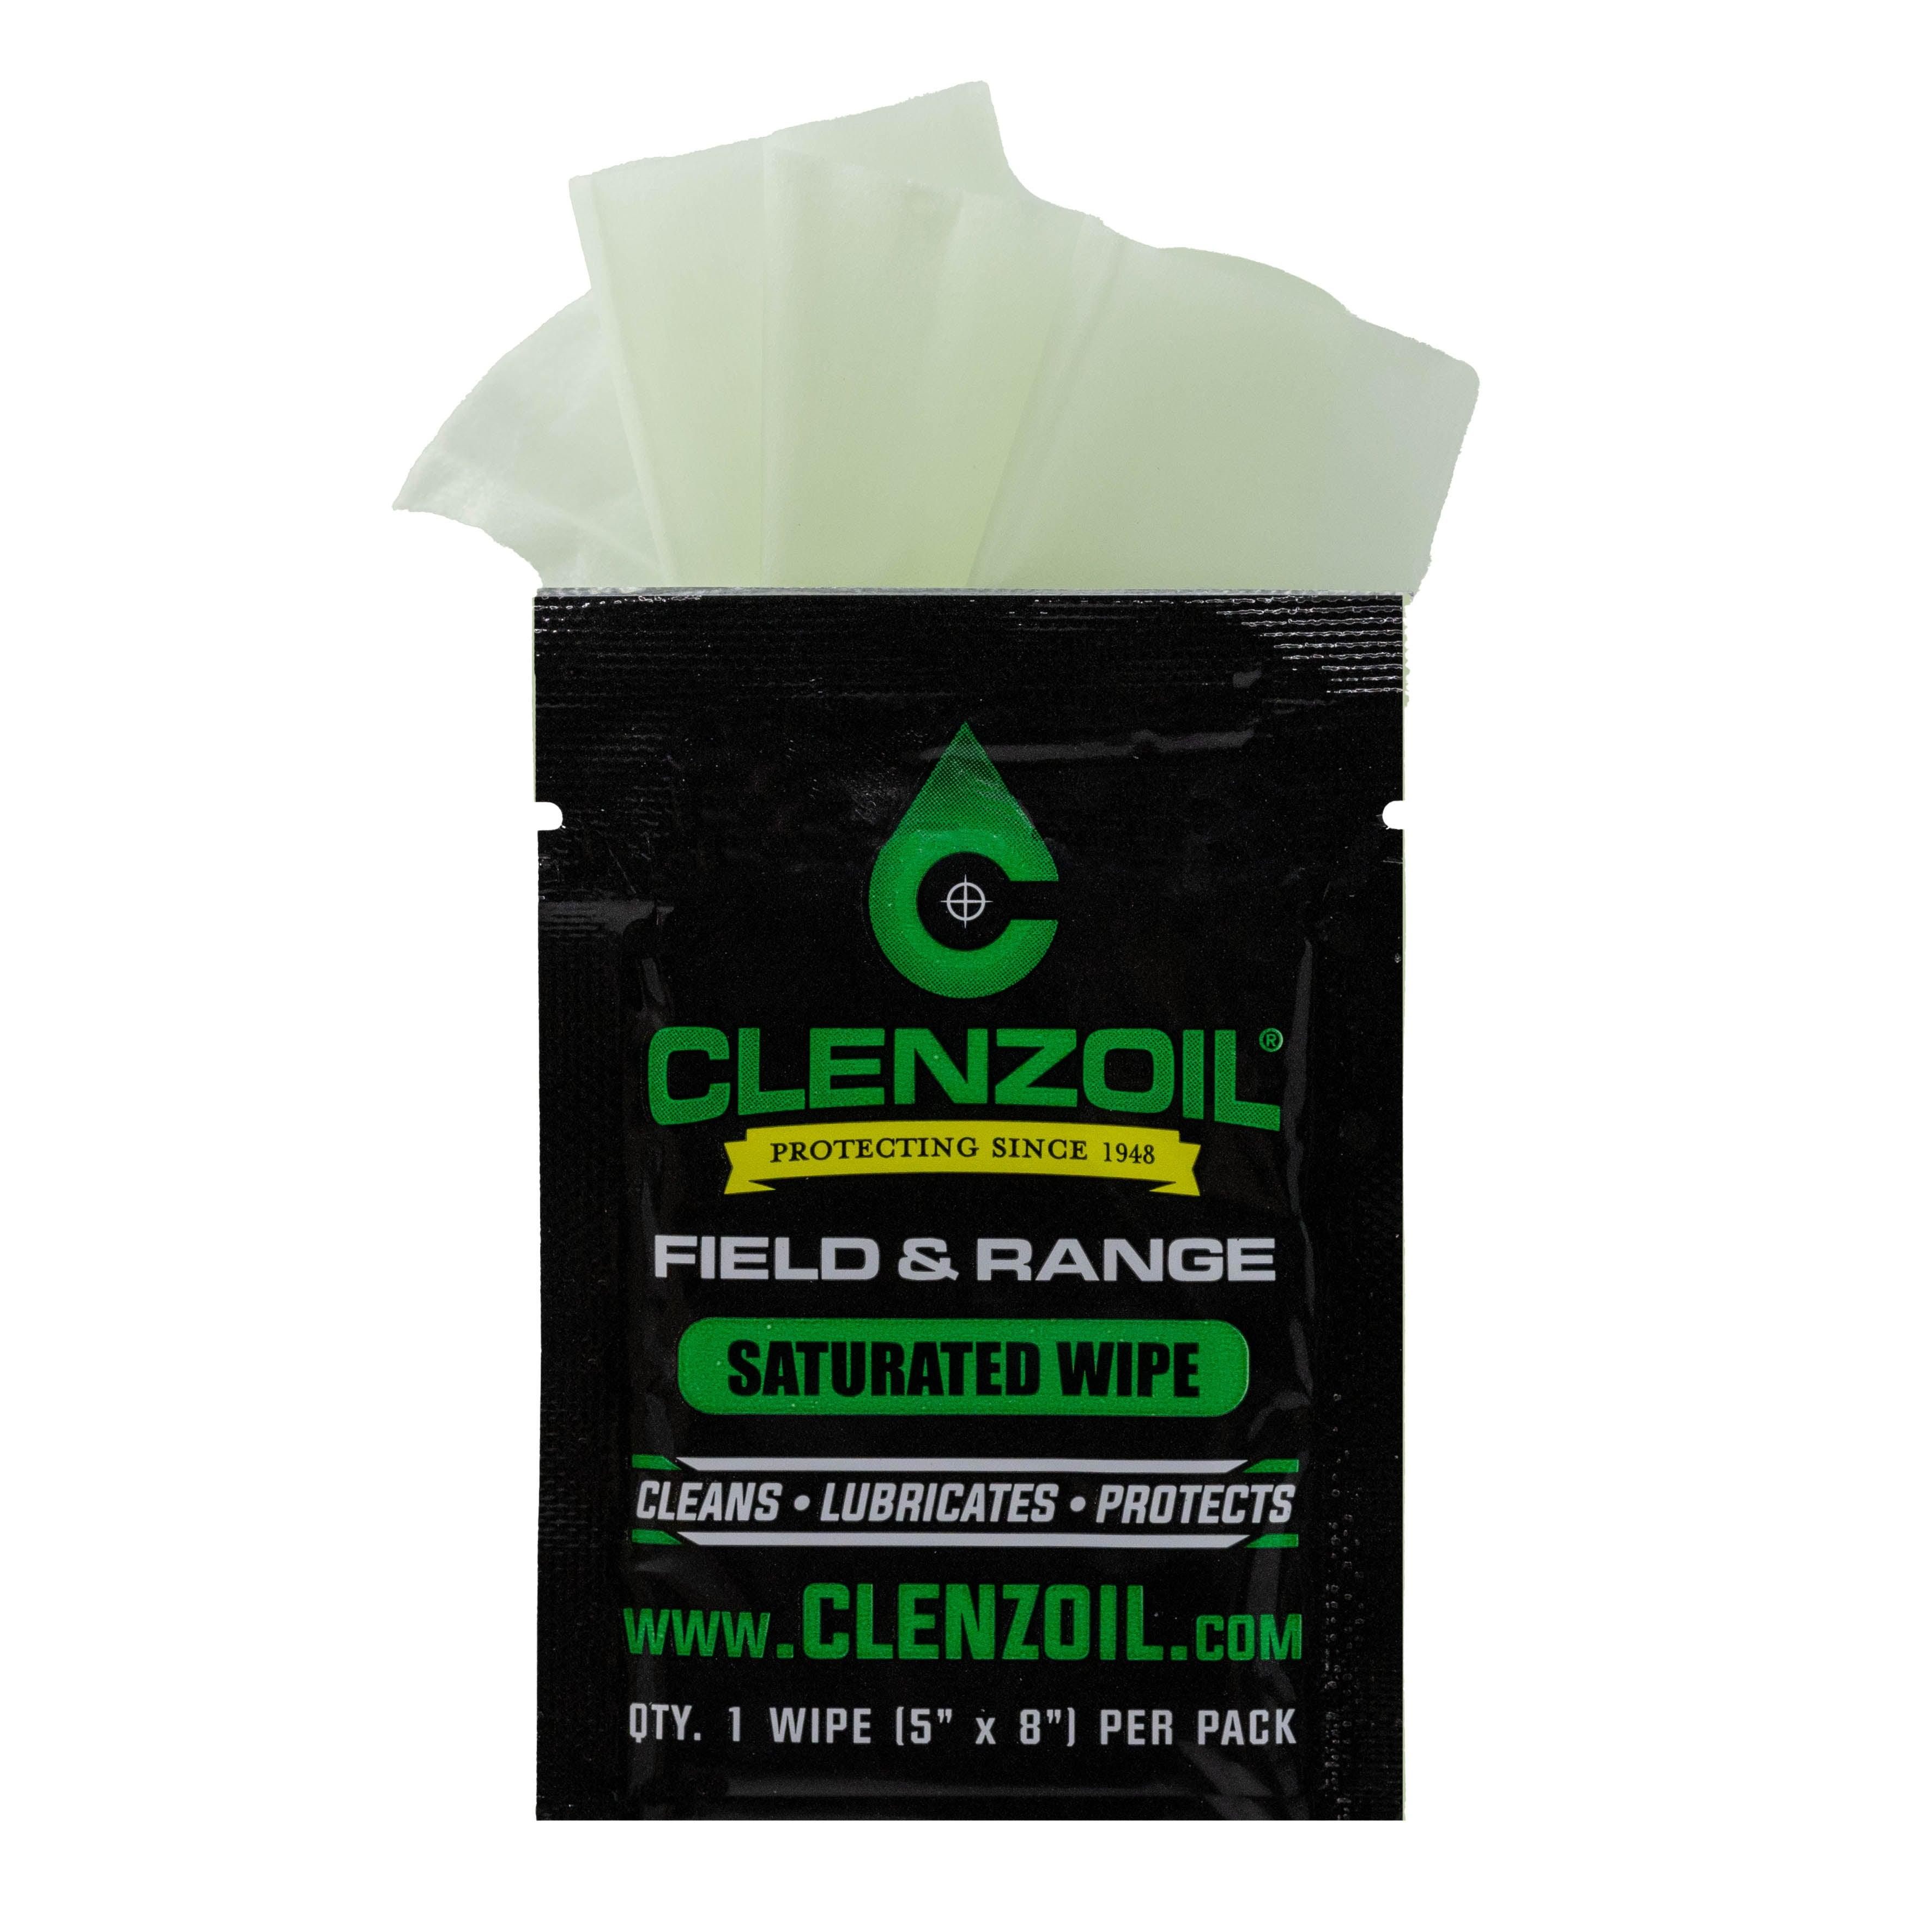 Field & Range Single Wipe Packet - Clenzoil Unlimited